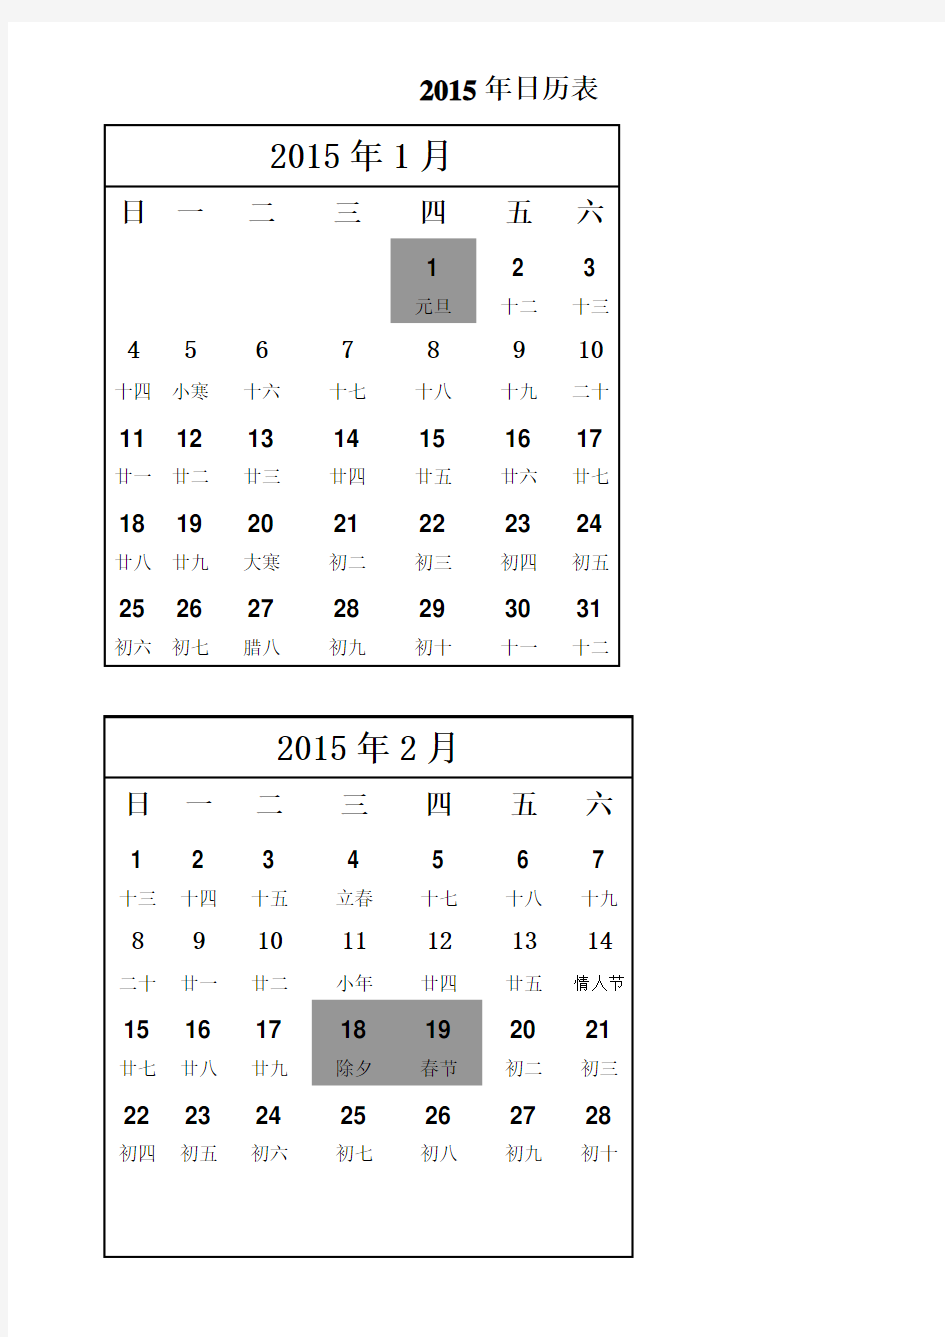 2015年度日历表